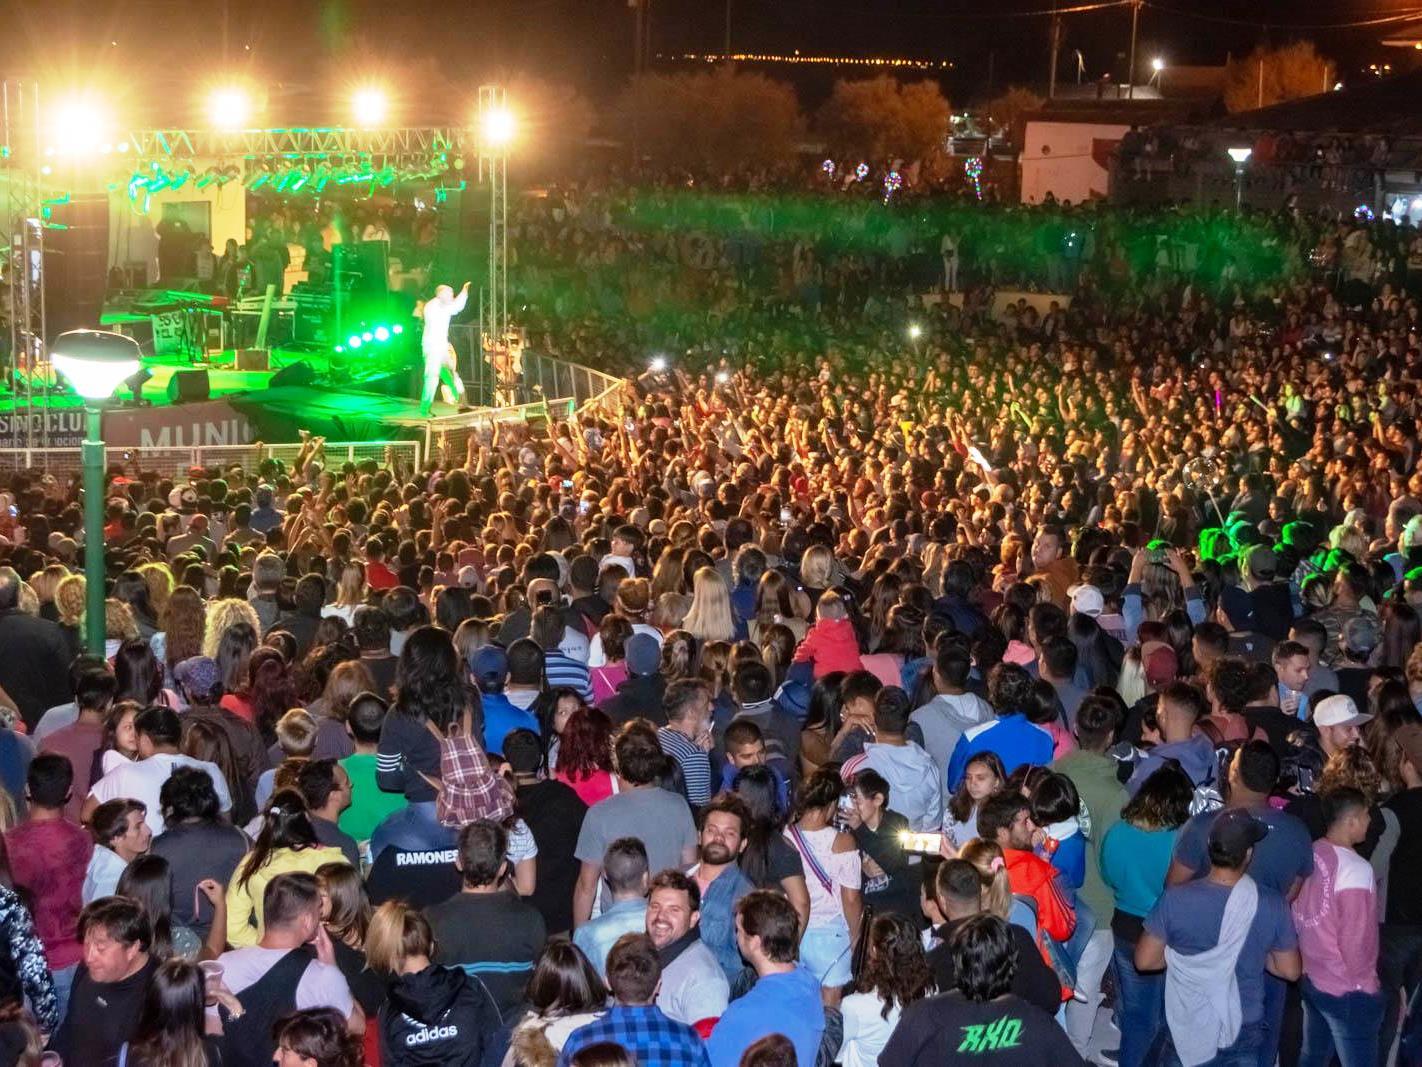 El 2 de enero comienza el programa de espectáculos que el municipio pensó para la temporada 2020-2021 en Playa Unión